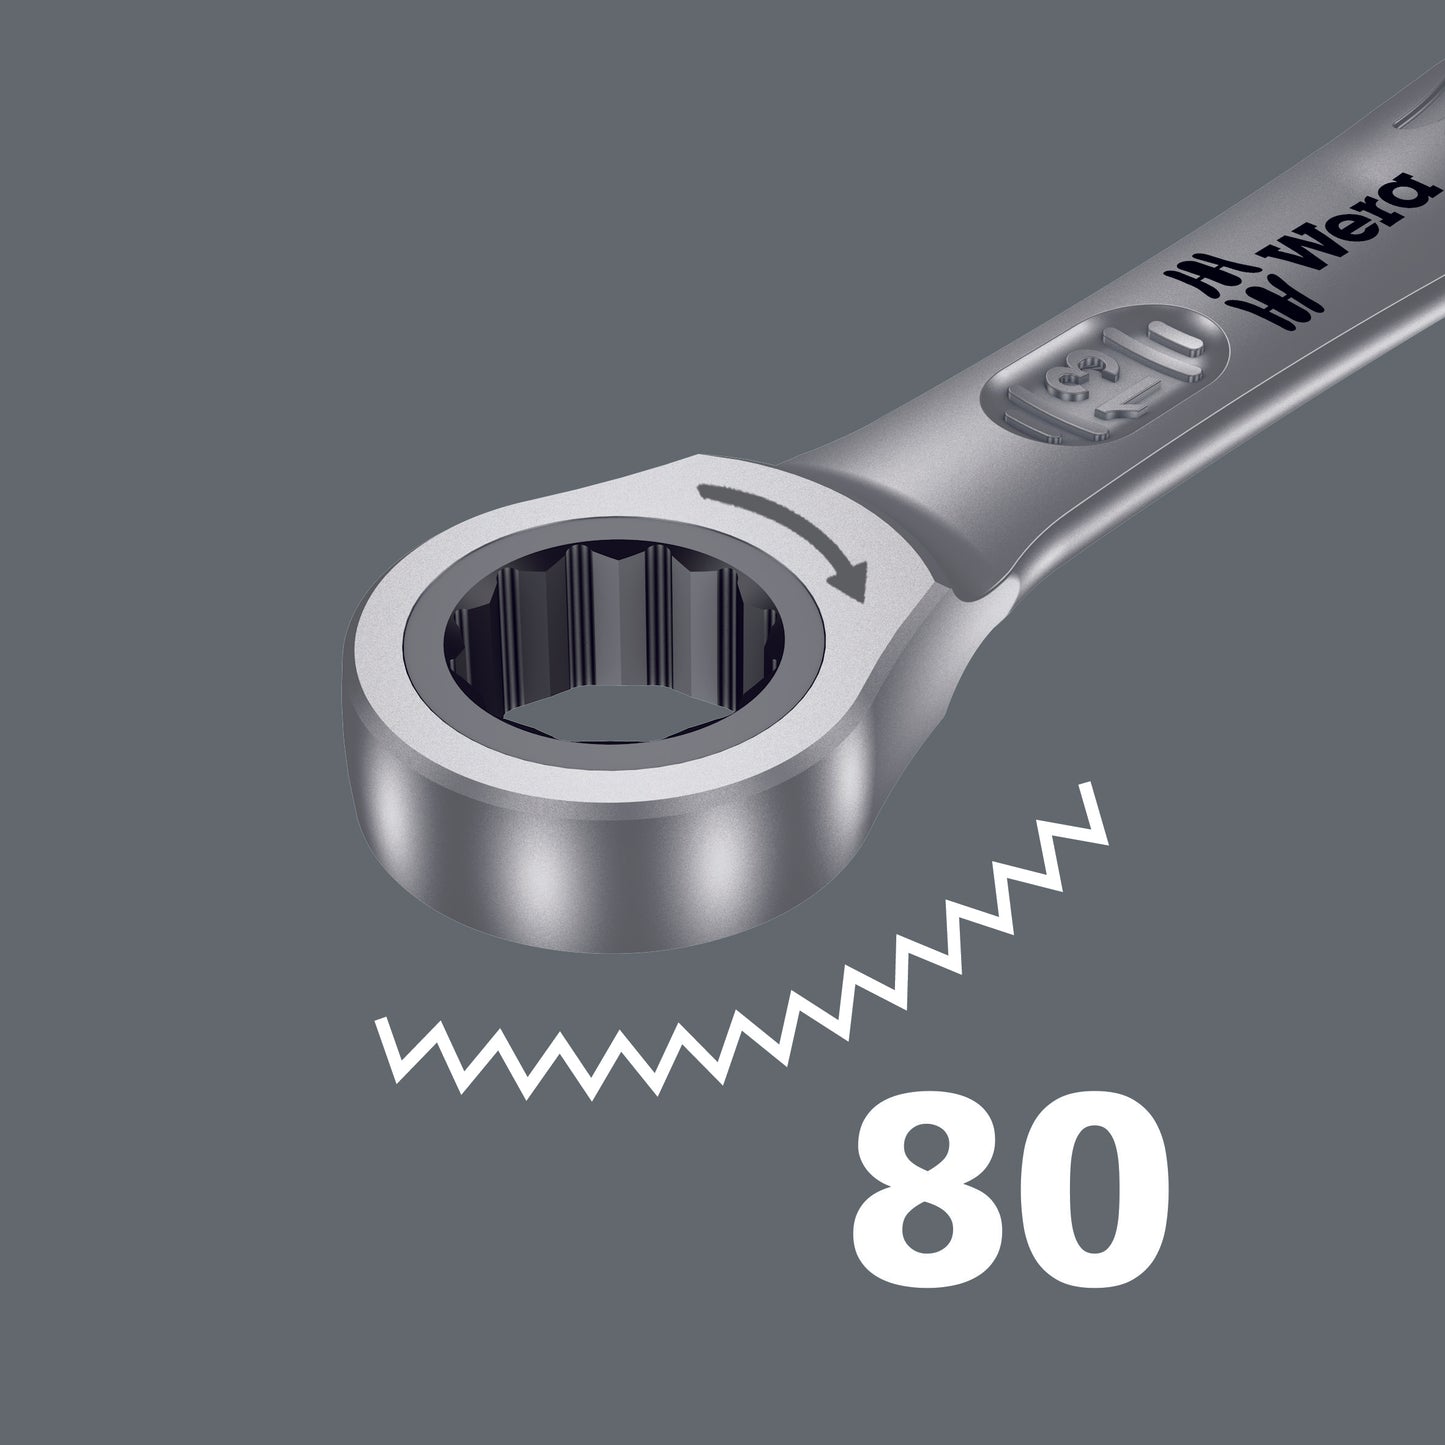 Wera 9632 Magnetic Rail 6000 Joker 1 Ring Ratcheting Wrench Set SAE 05020016001